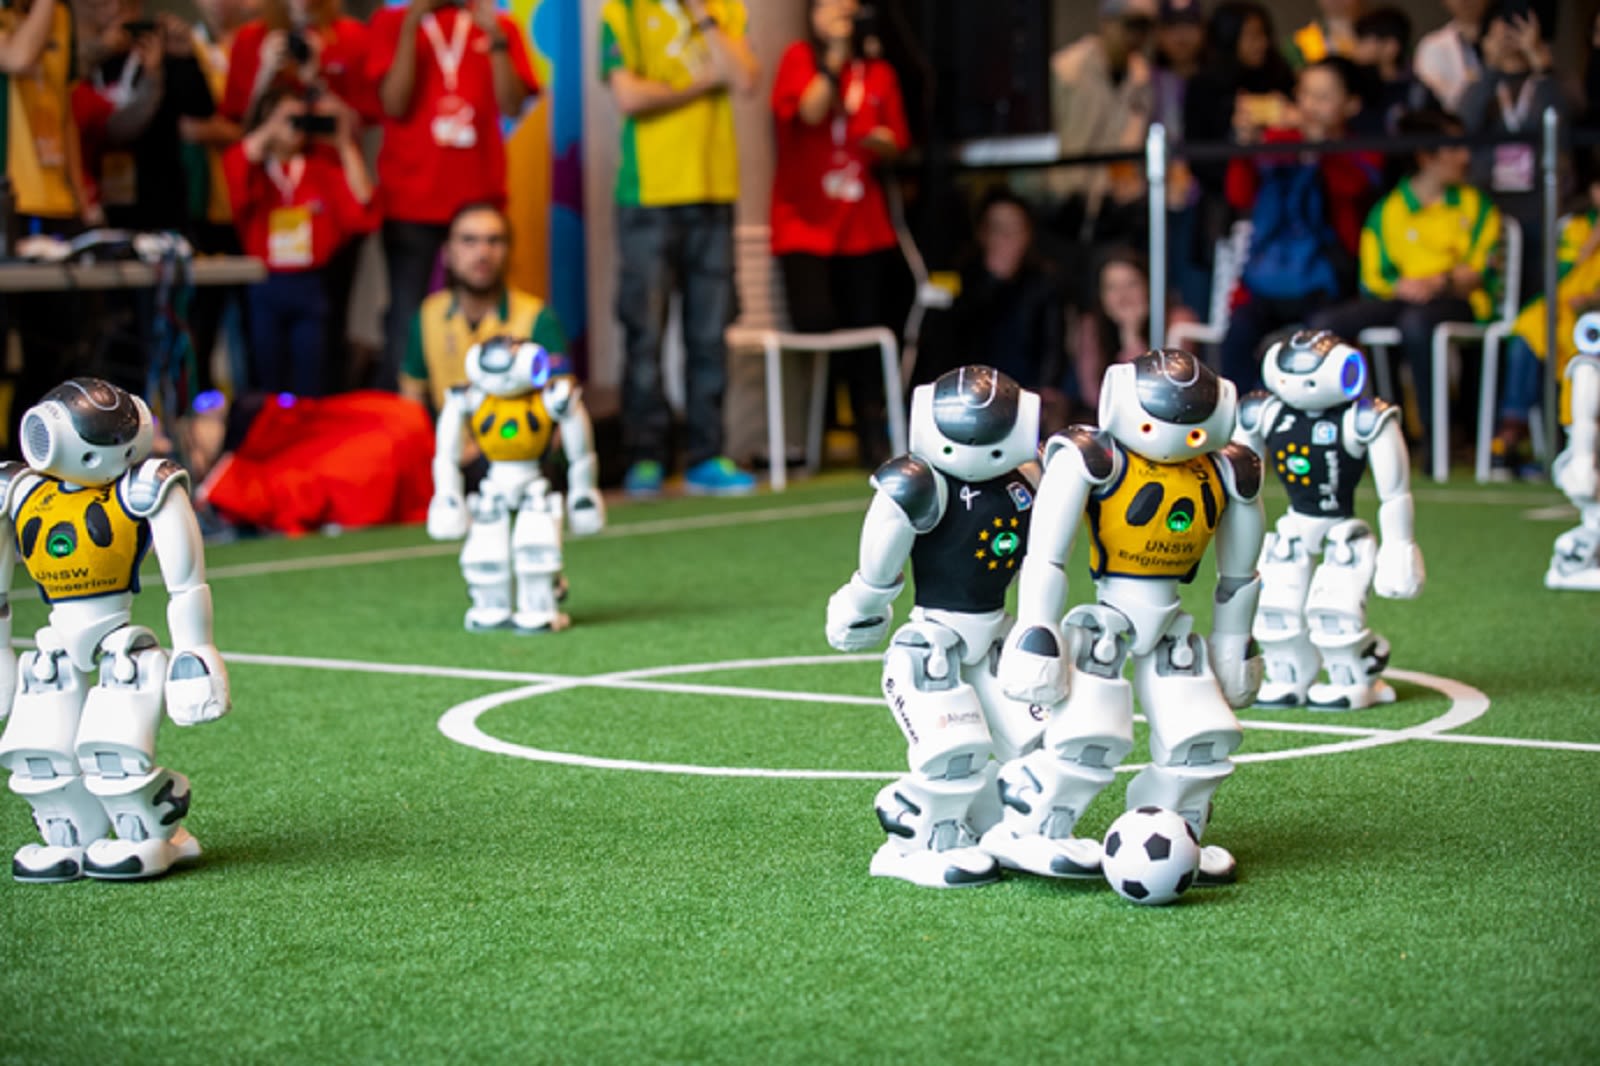 ربات‌های انسان‌نمای گوگل در زمین چمن، فوتبال بازی می‌کنند